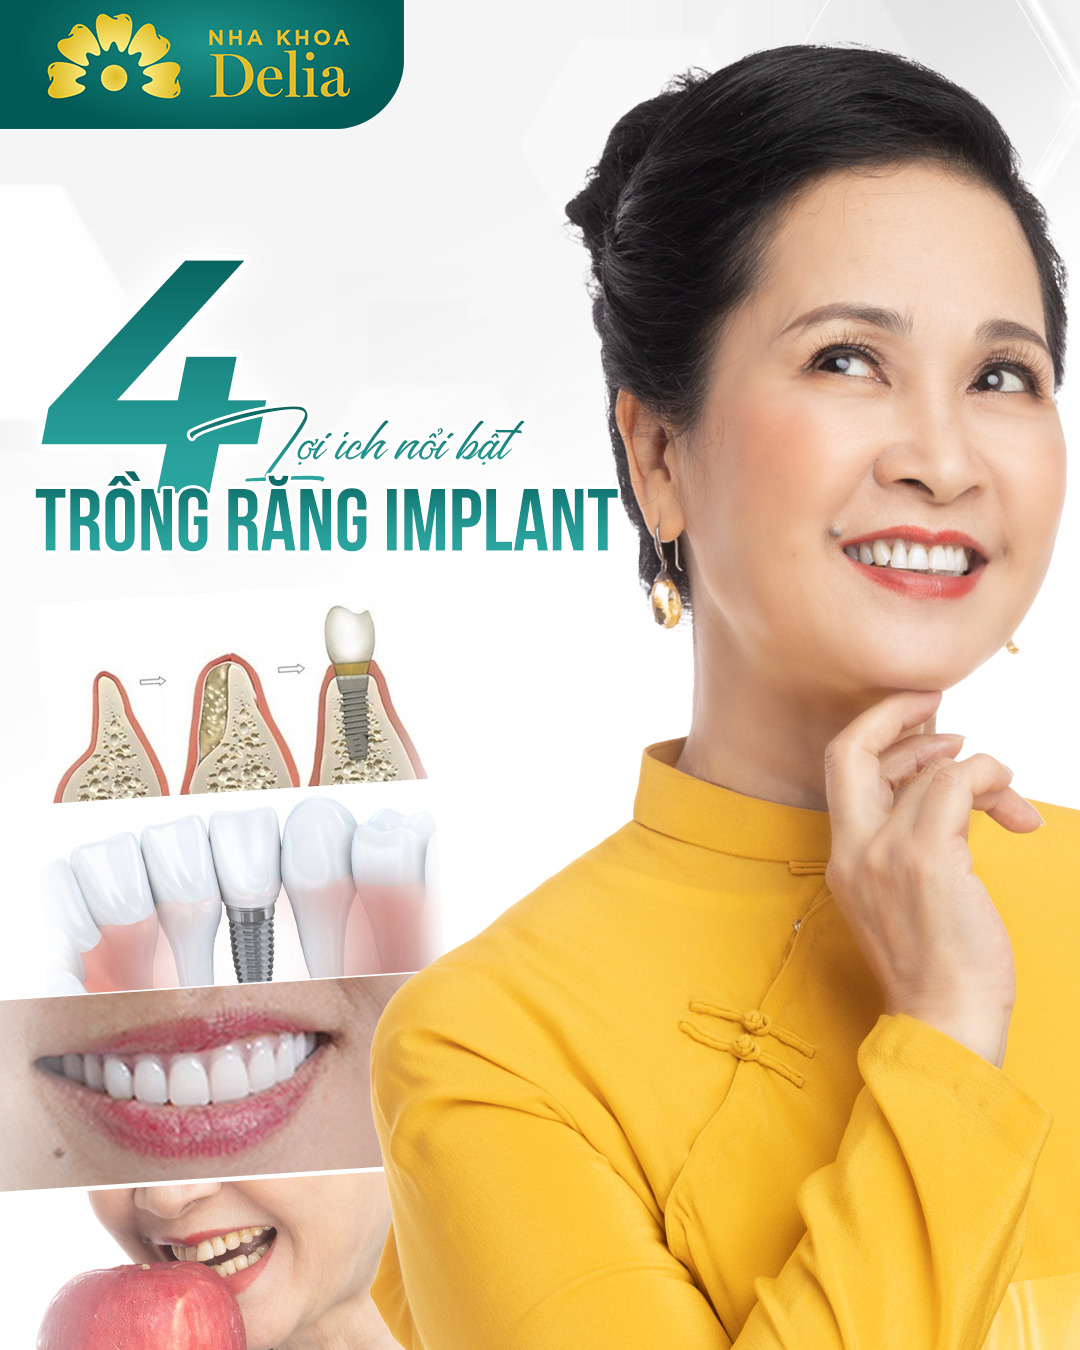 Có Nên Trồng Răng Implant Không? 4 Câu Hỏi Giúp Bạn Dễ Dàng Quyết Định